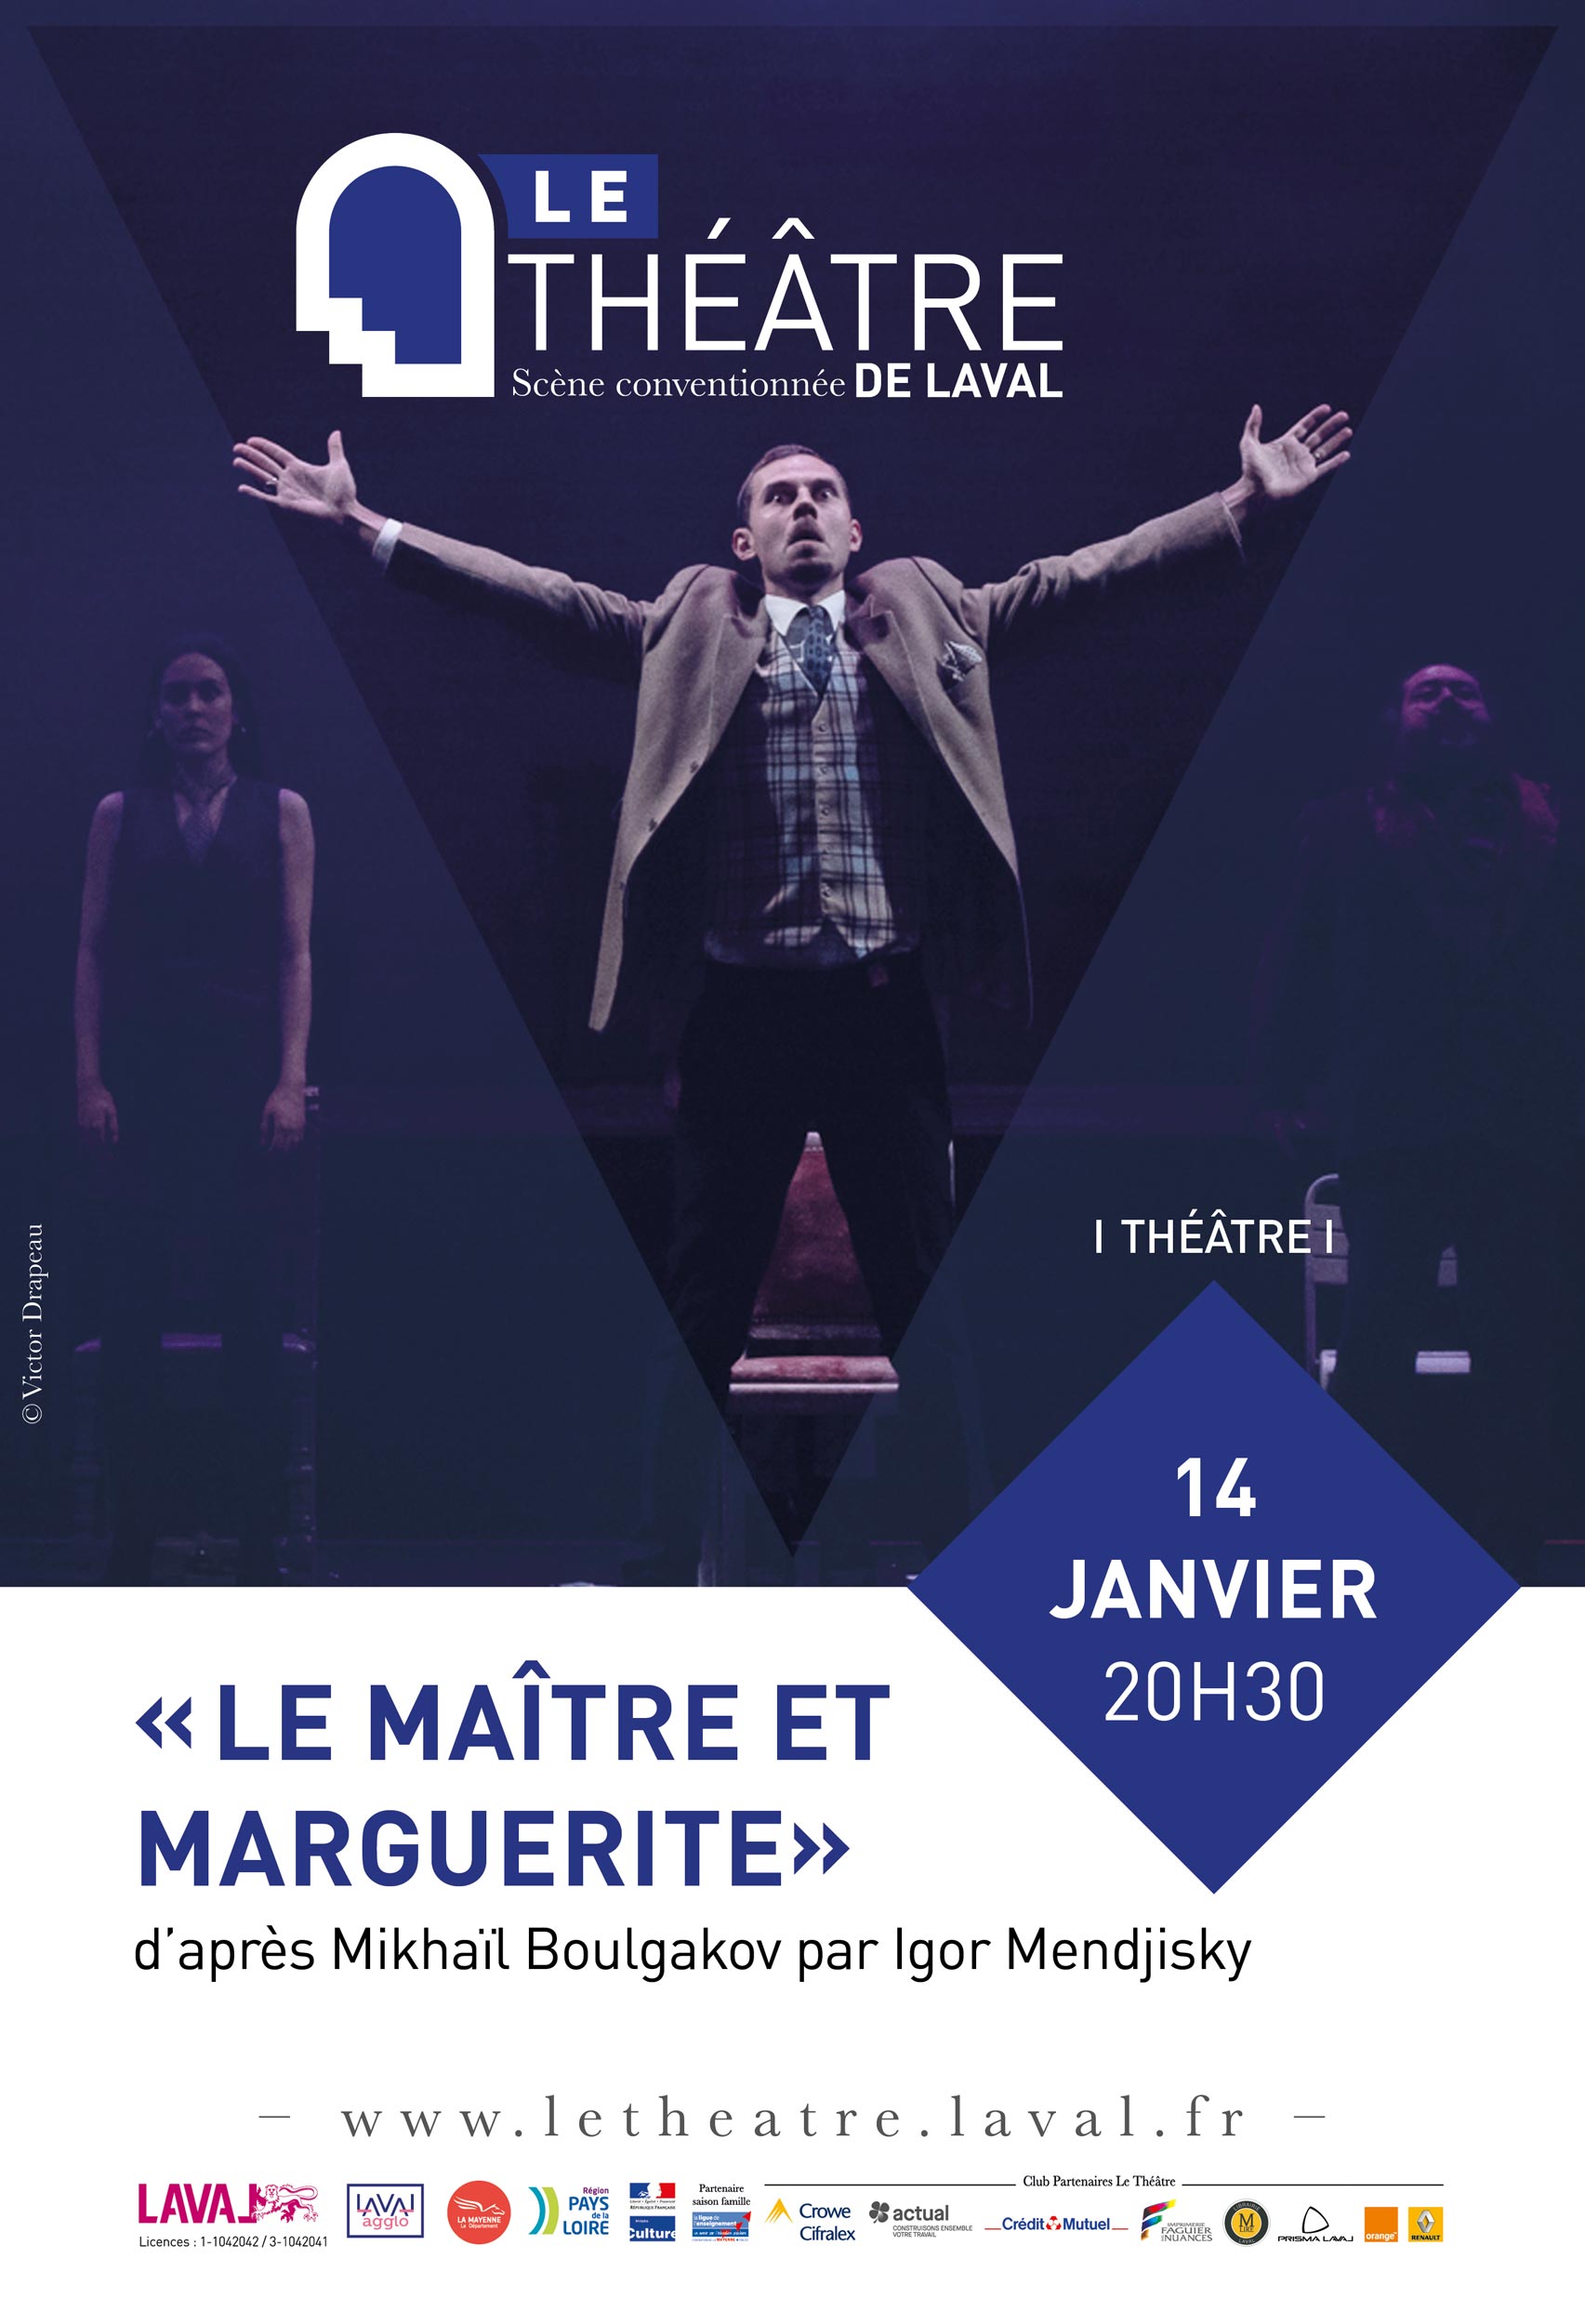 Le théâtre de Laval